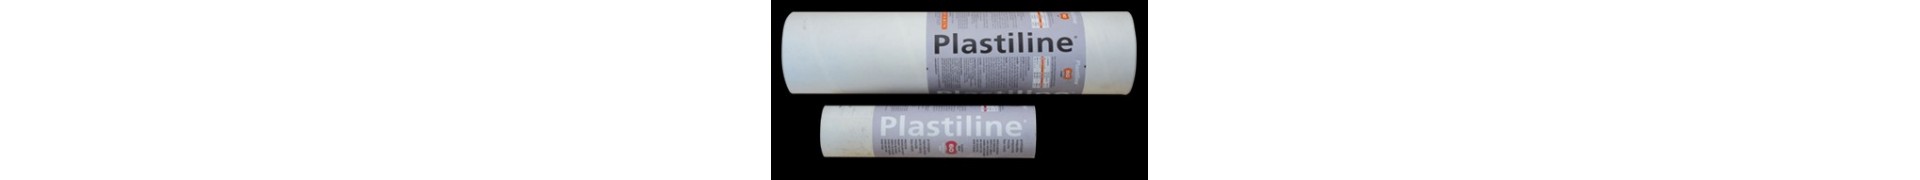 PLASTILINE HERBIN 55 5 Kg STANDARD PLASTILINE IVOIRE 